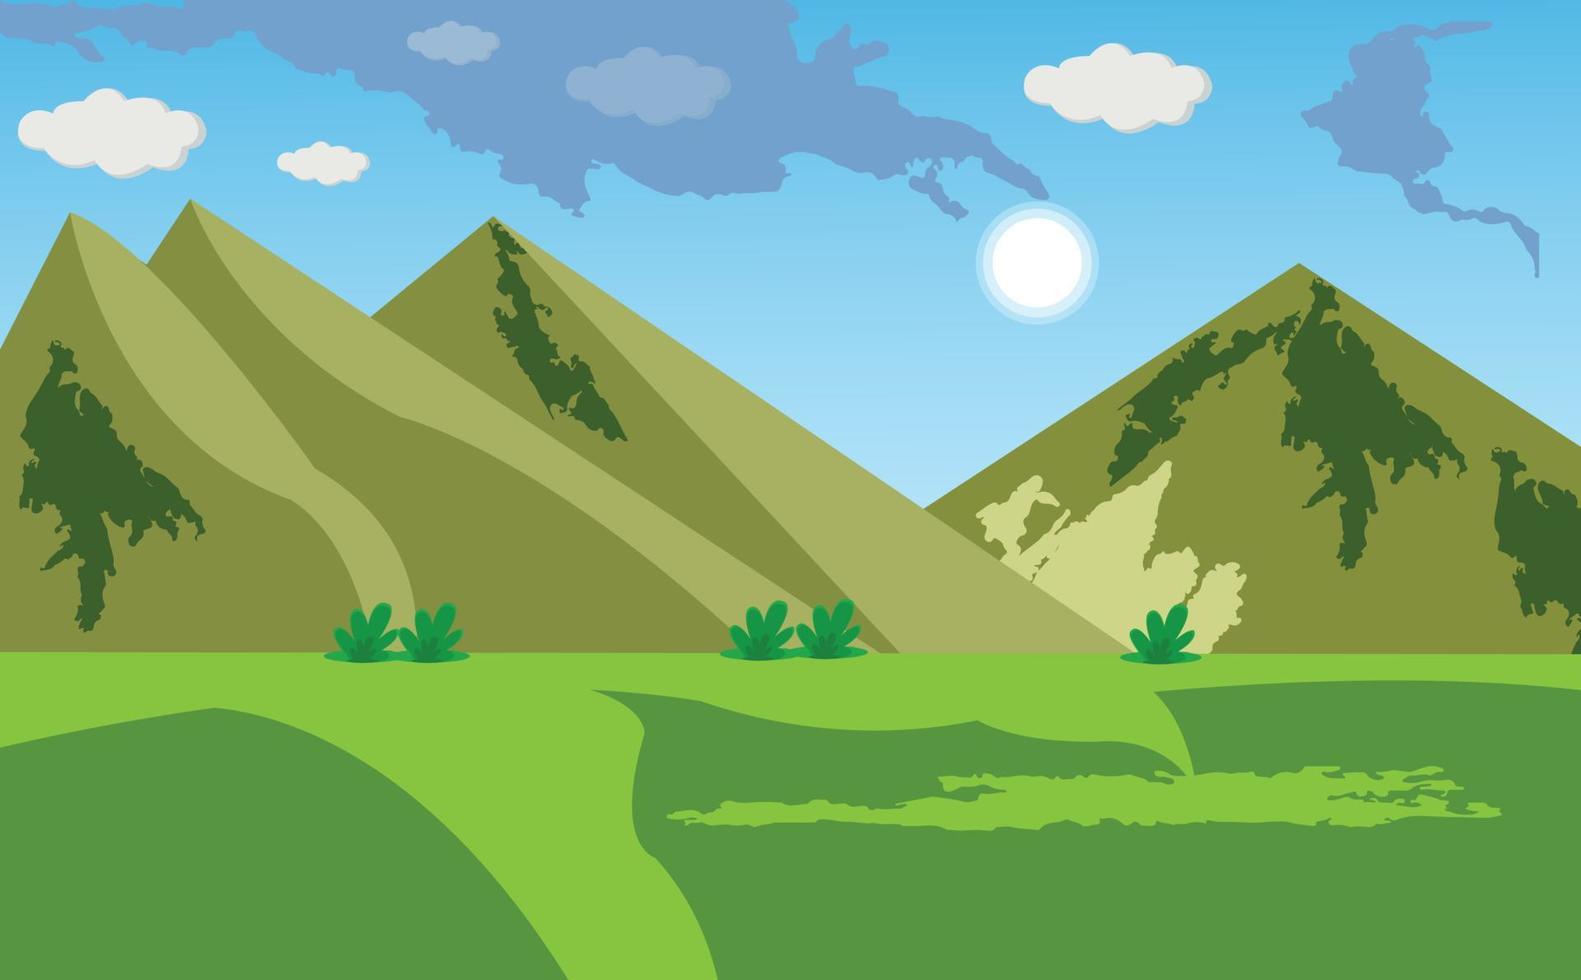 paisaje de montaña de dibujos animados con cielo azul, sol y nubes, campo verde. vector de escena de dibujos animados en 2d de pastizales de praderas. las colinas parecen pirámides.